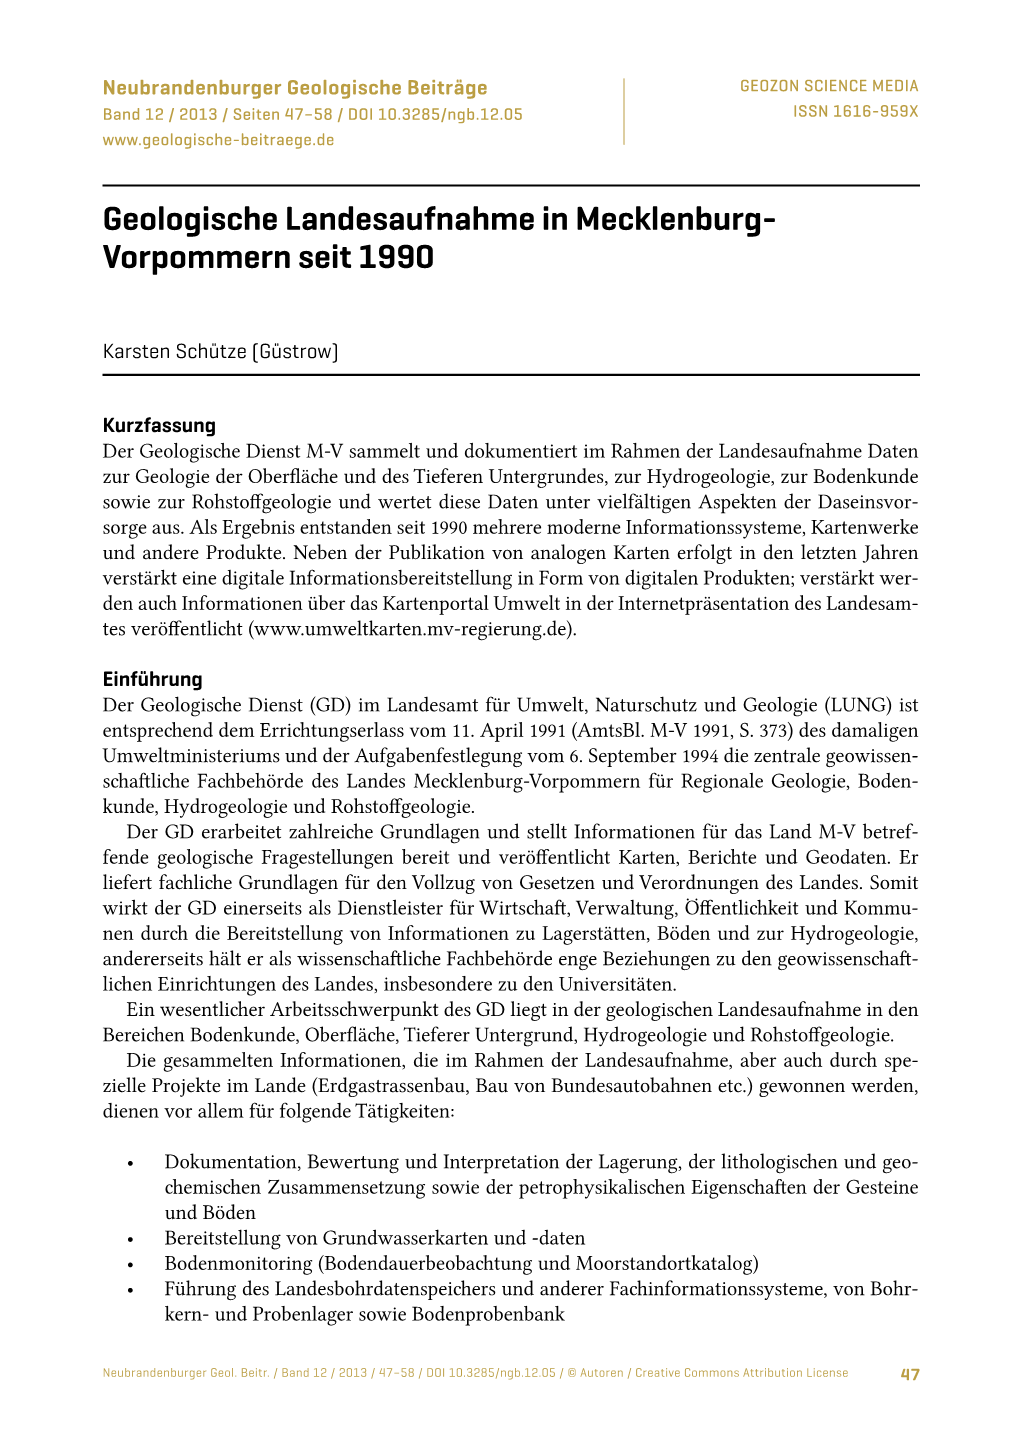 Geologische Landesaufnahme in Mecklenburg-Vorpommern Seit 1990